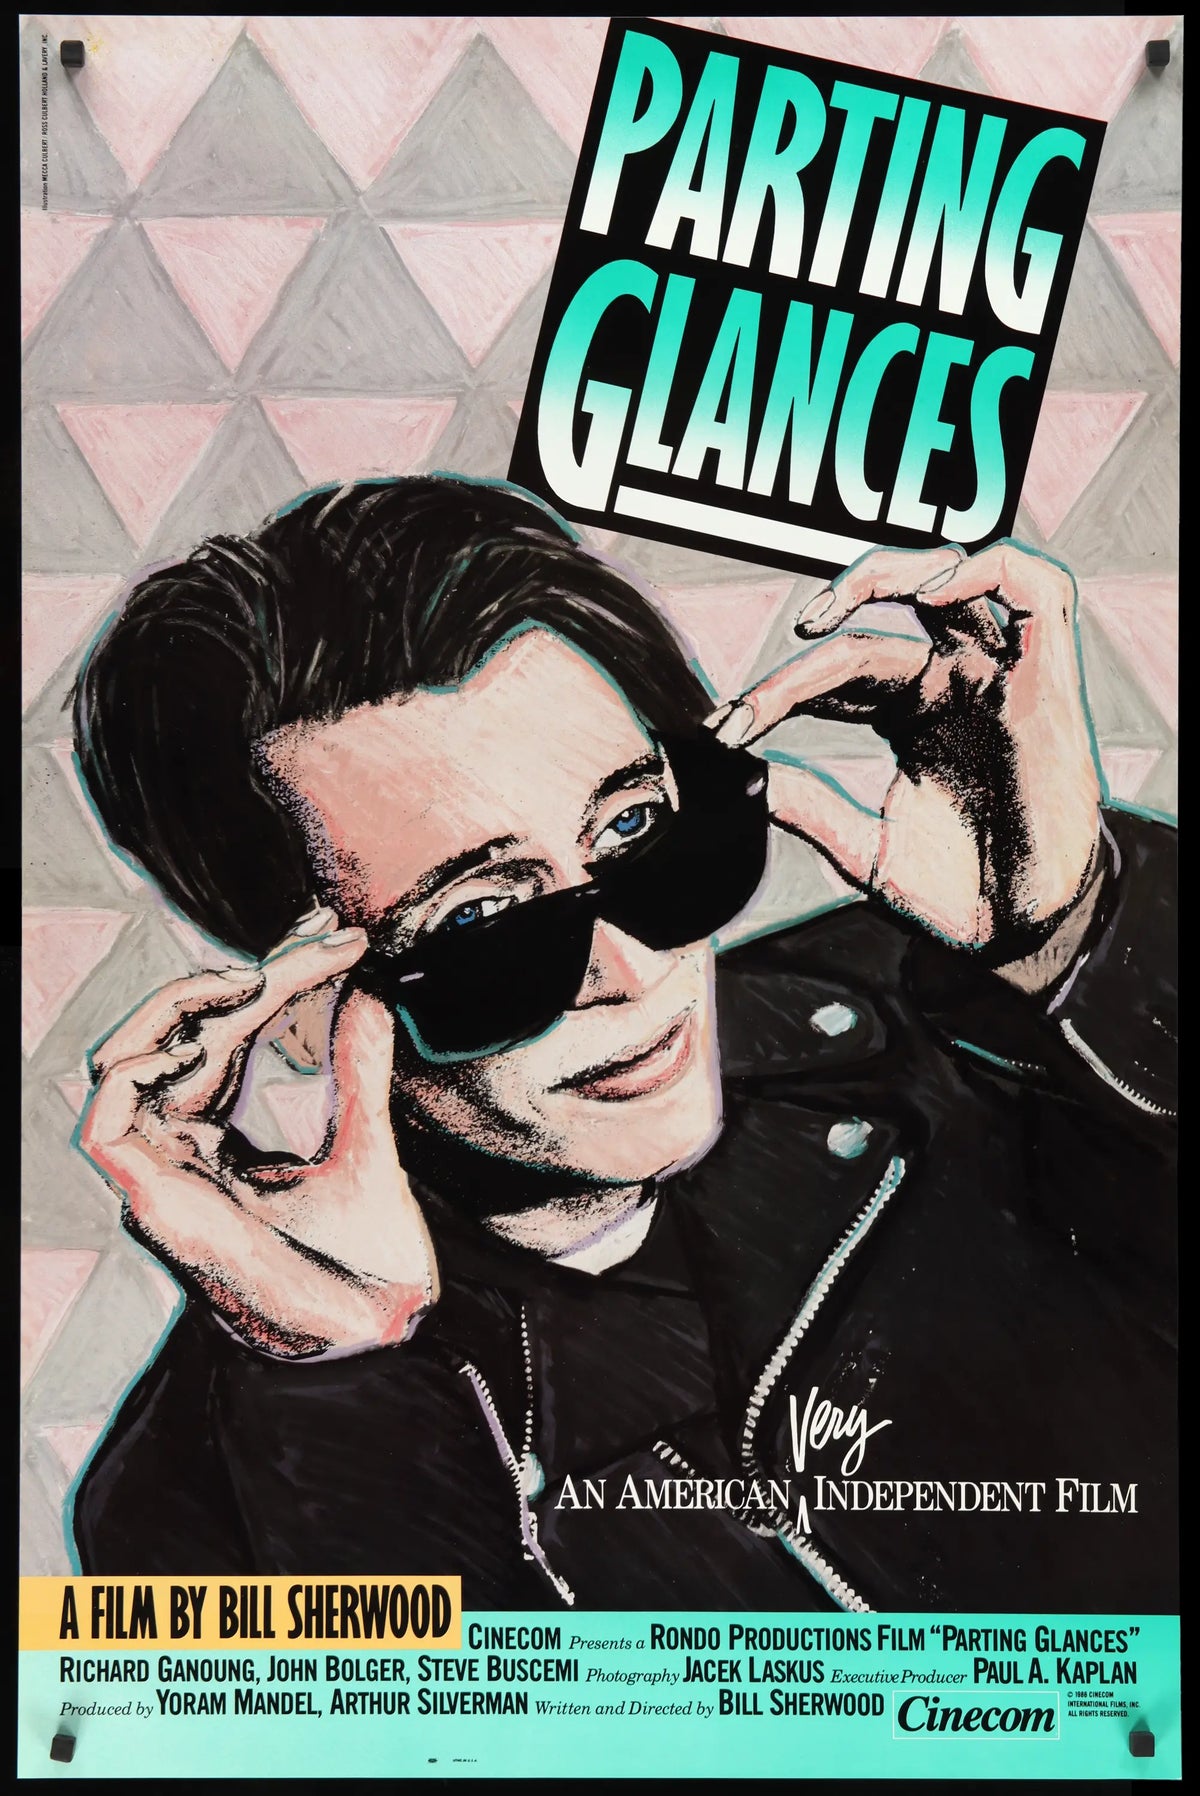 Parting Glances (1986) original movie poster for sale at Original Film Art